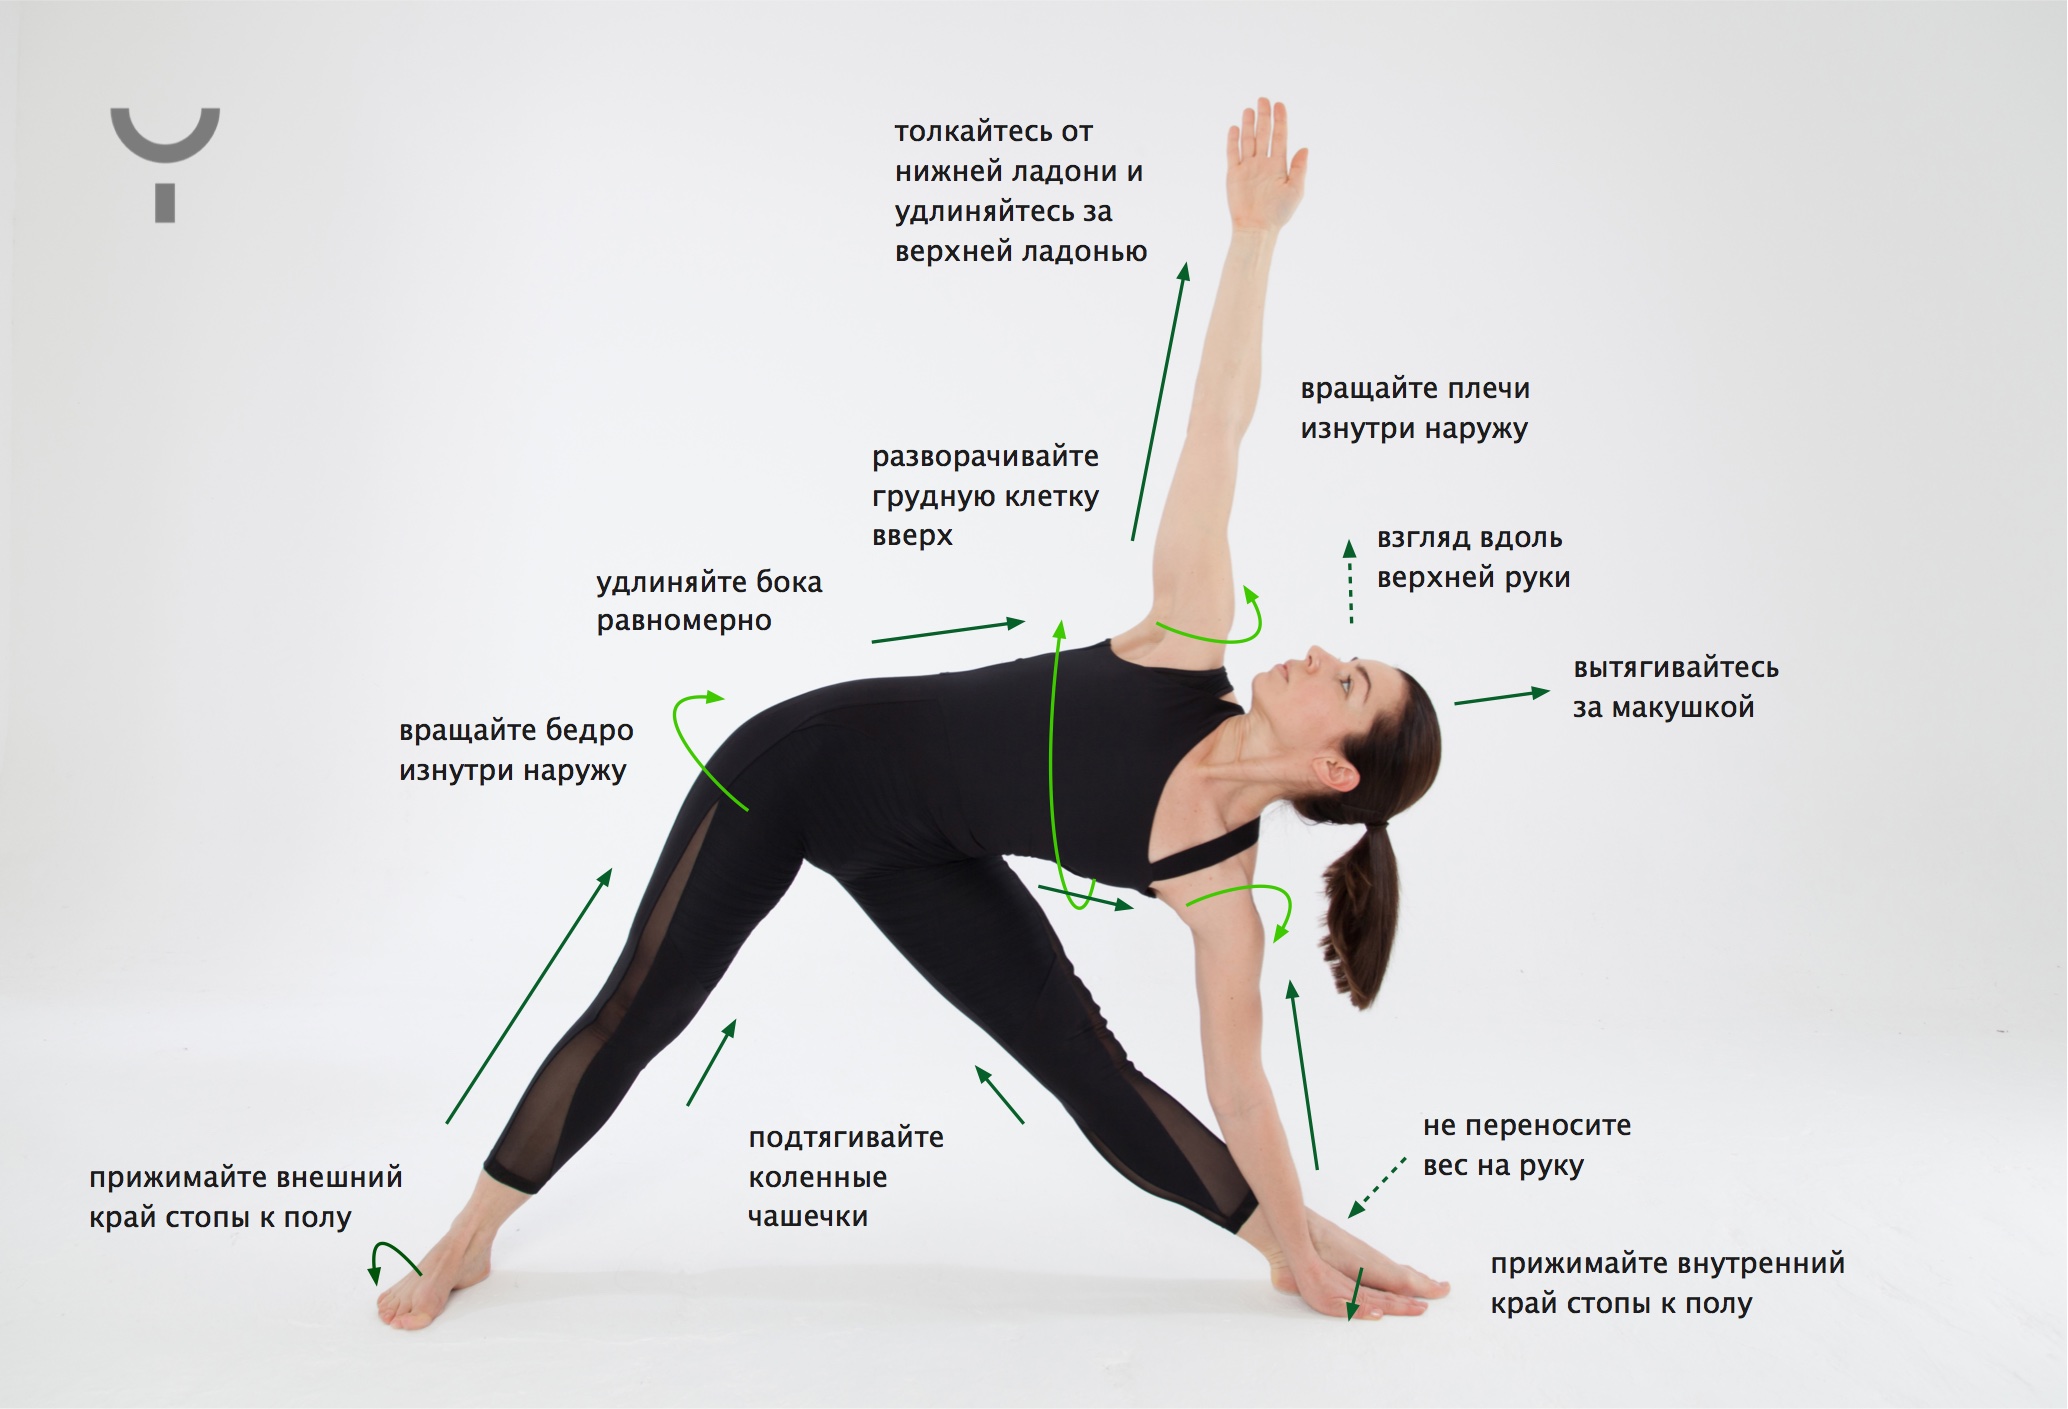 Асана Уттхита Триконасана – эффективная поза для вытяжения и укрепления всего тела